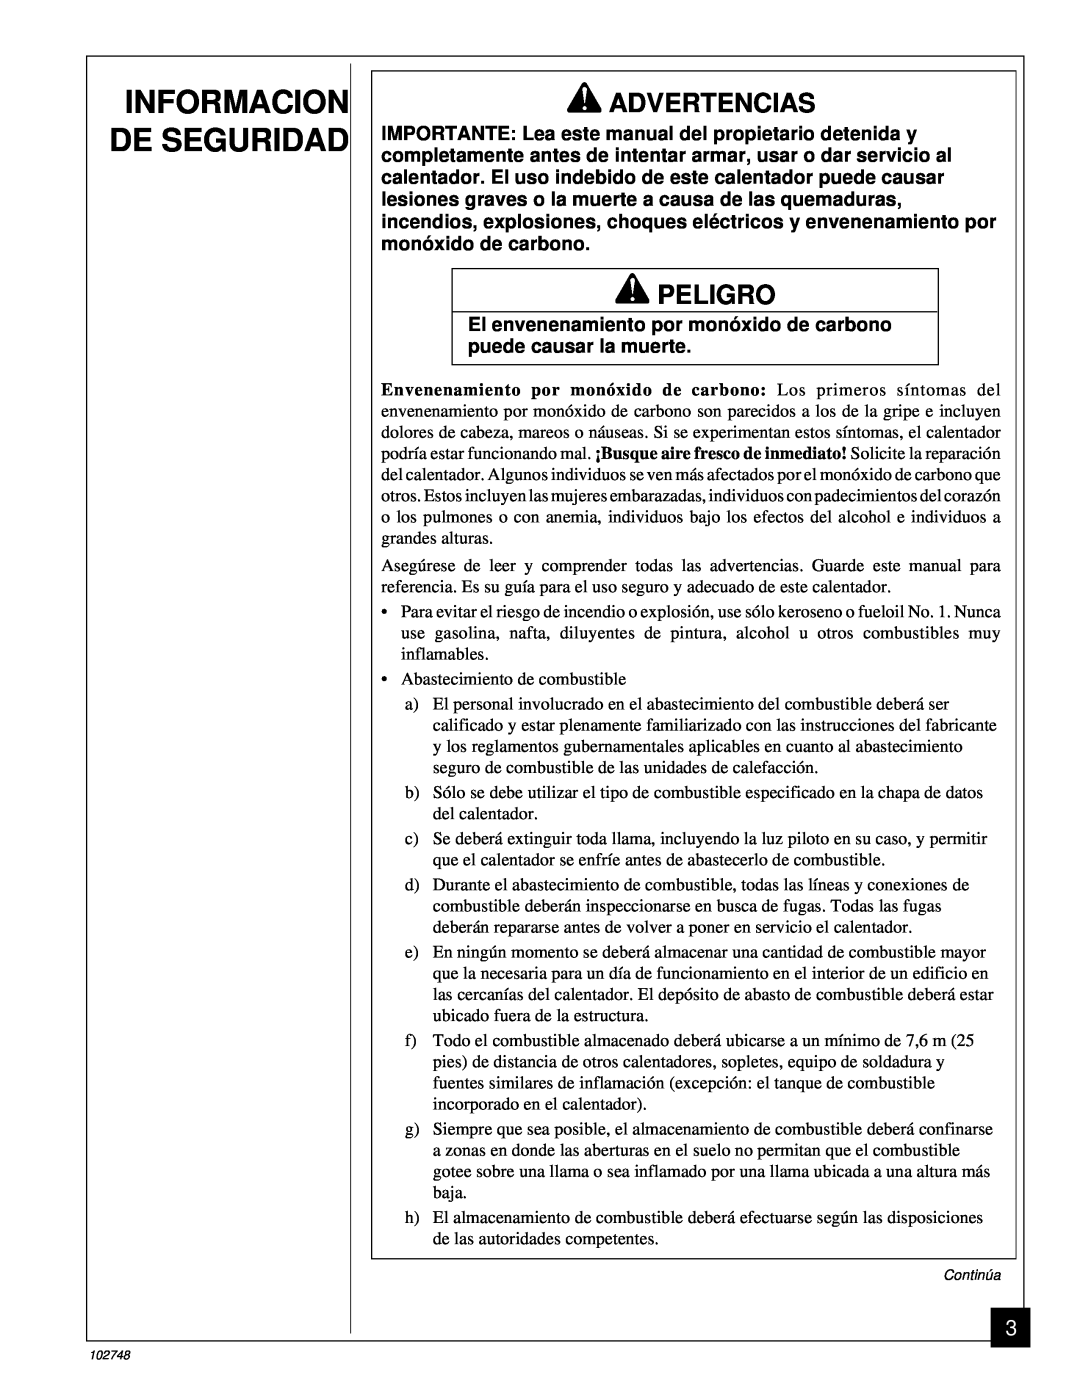 Desa 000) 26, 000) 20 owner manual Informacion De Seguridad, Advertencias, Peligro 